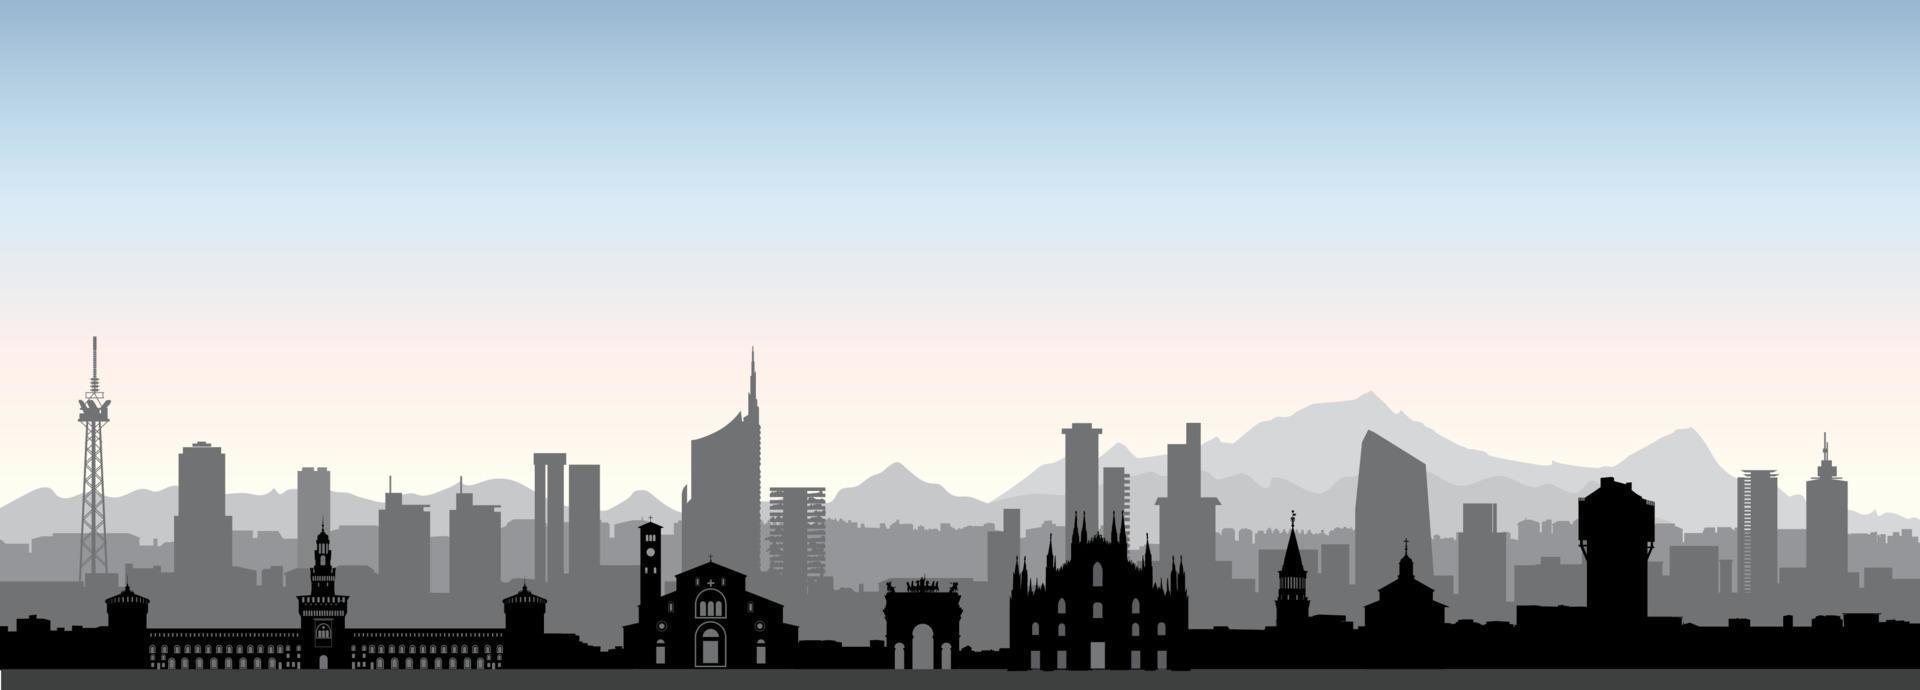 Skyline von Mailand. italien, berühmte architektonische sehenswürdigkeiten. reisehintergrund mit historischen gebäuden. Europäische städtische italienische Landschaft. vektor